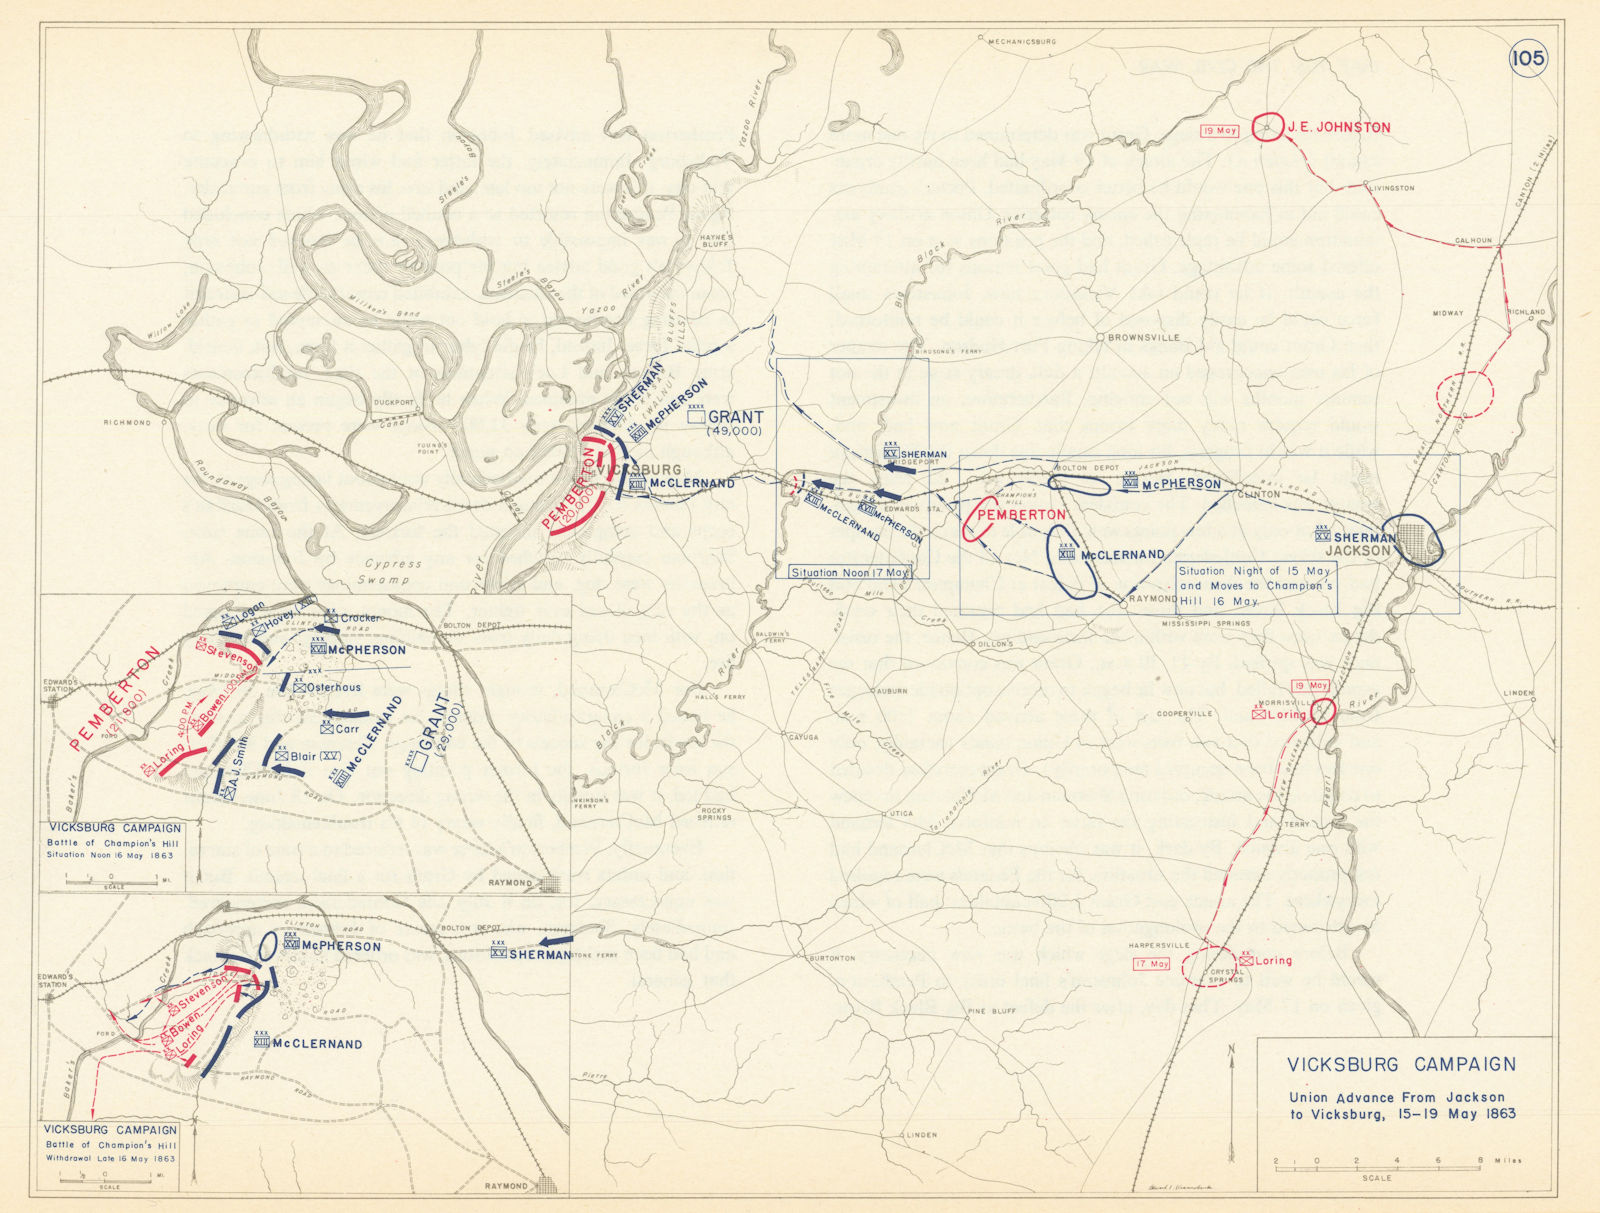 American Civil War. 15-19 May 1863 Vicksburg Campaign. Champion's Hill 1959 map